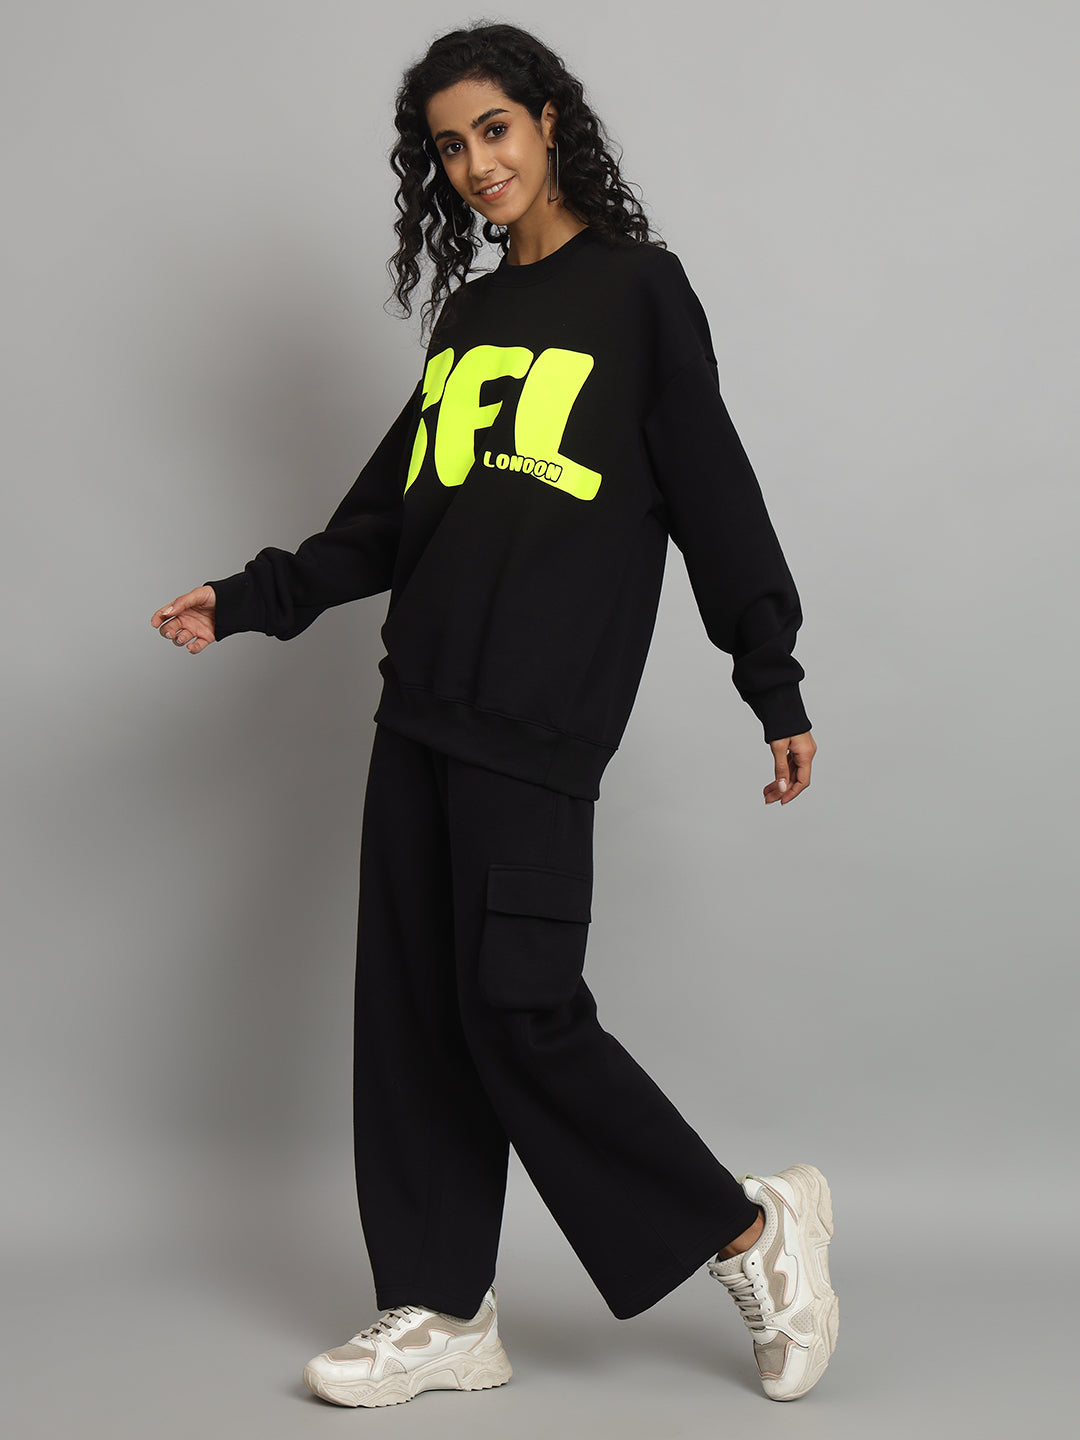 Griffel Women Oversized GFL Print Fit Basic Round Neck 100% Cotton Fleece Black Tracksuit - griffel